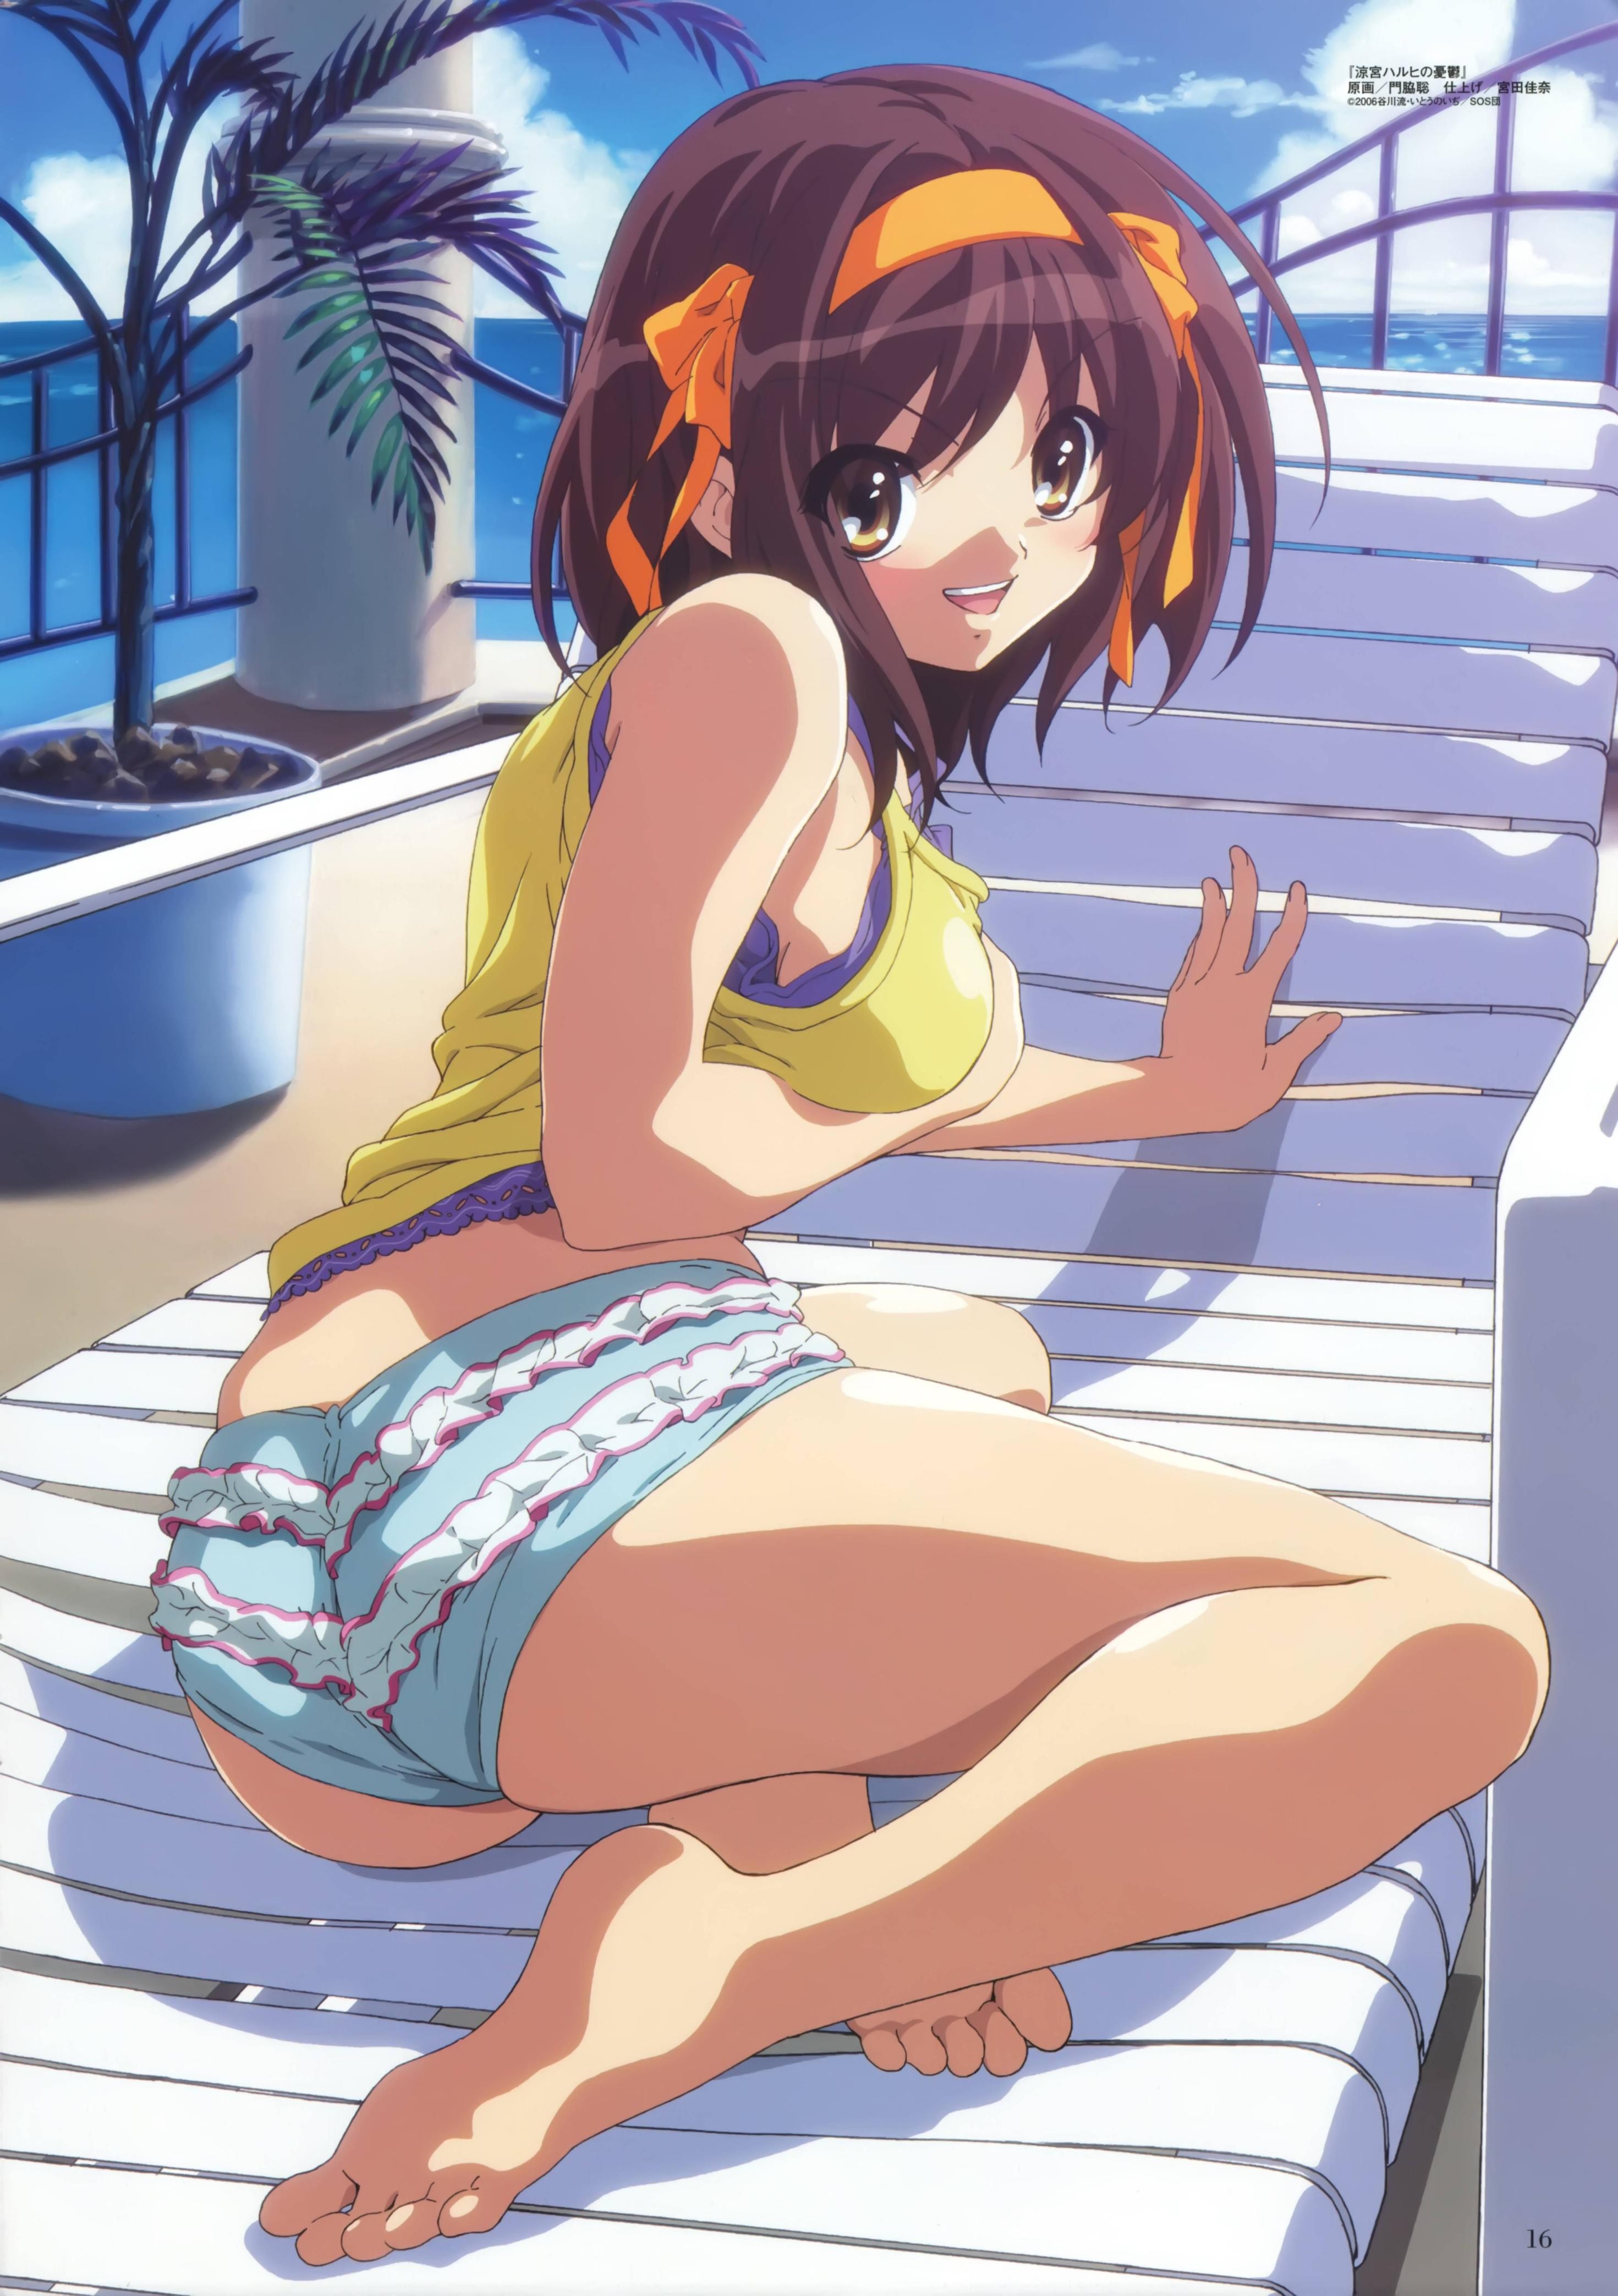 Anime 2941x4174 The Melancholy of Haruhi Suzumiya Suzumiya Haruhi ass anime girls anime barefoot short shorts feet